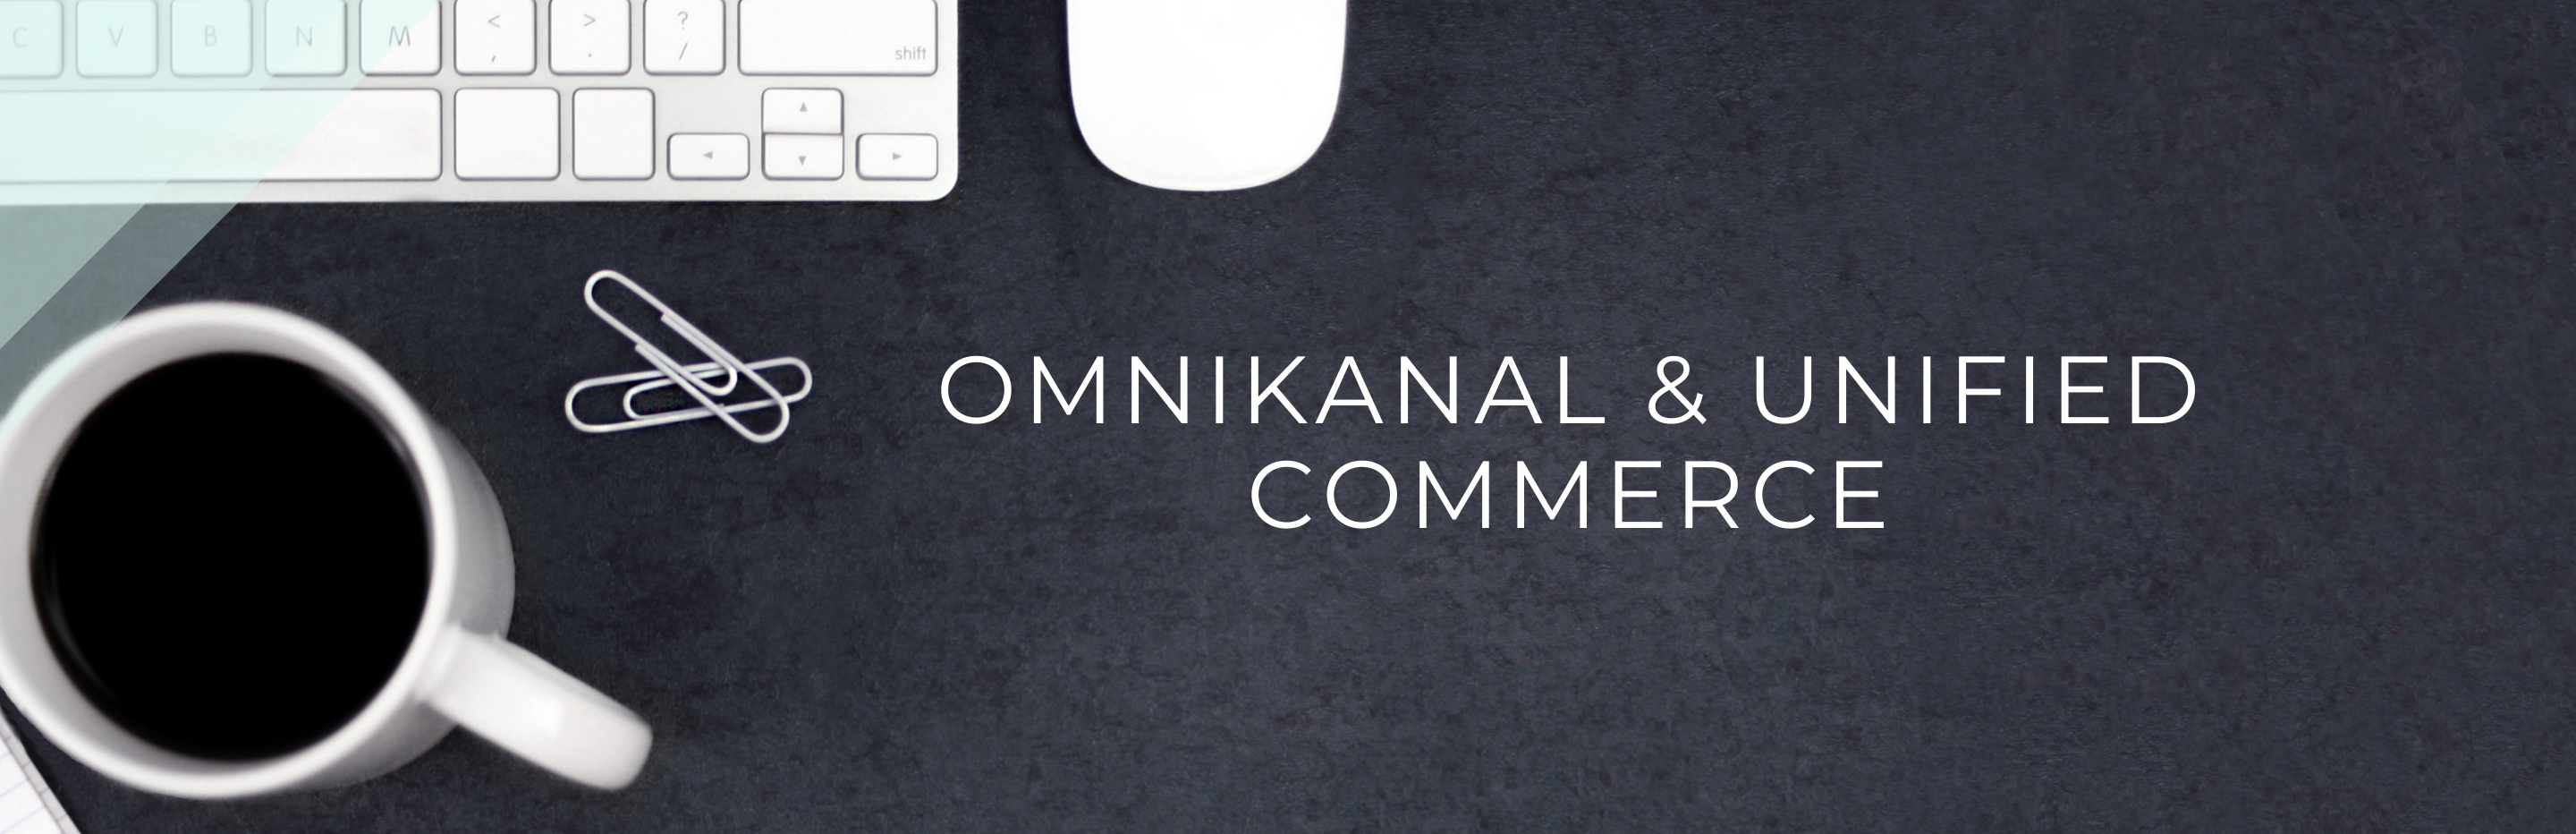 Omnikanal og Unified Commerce